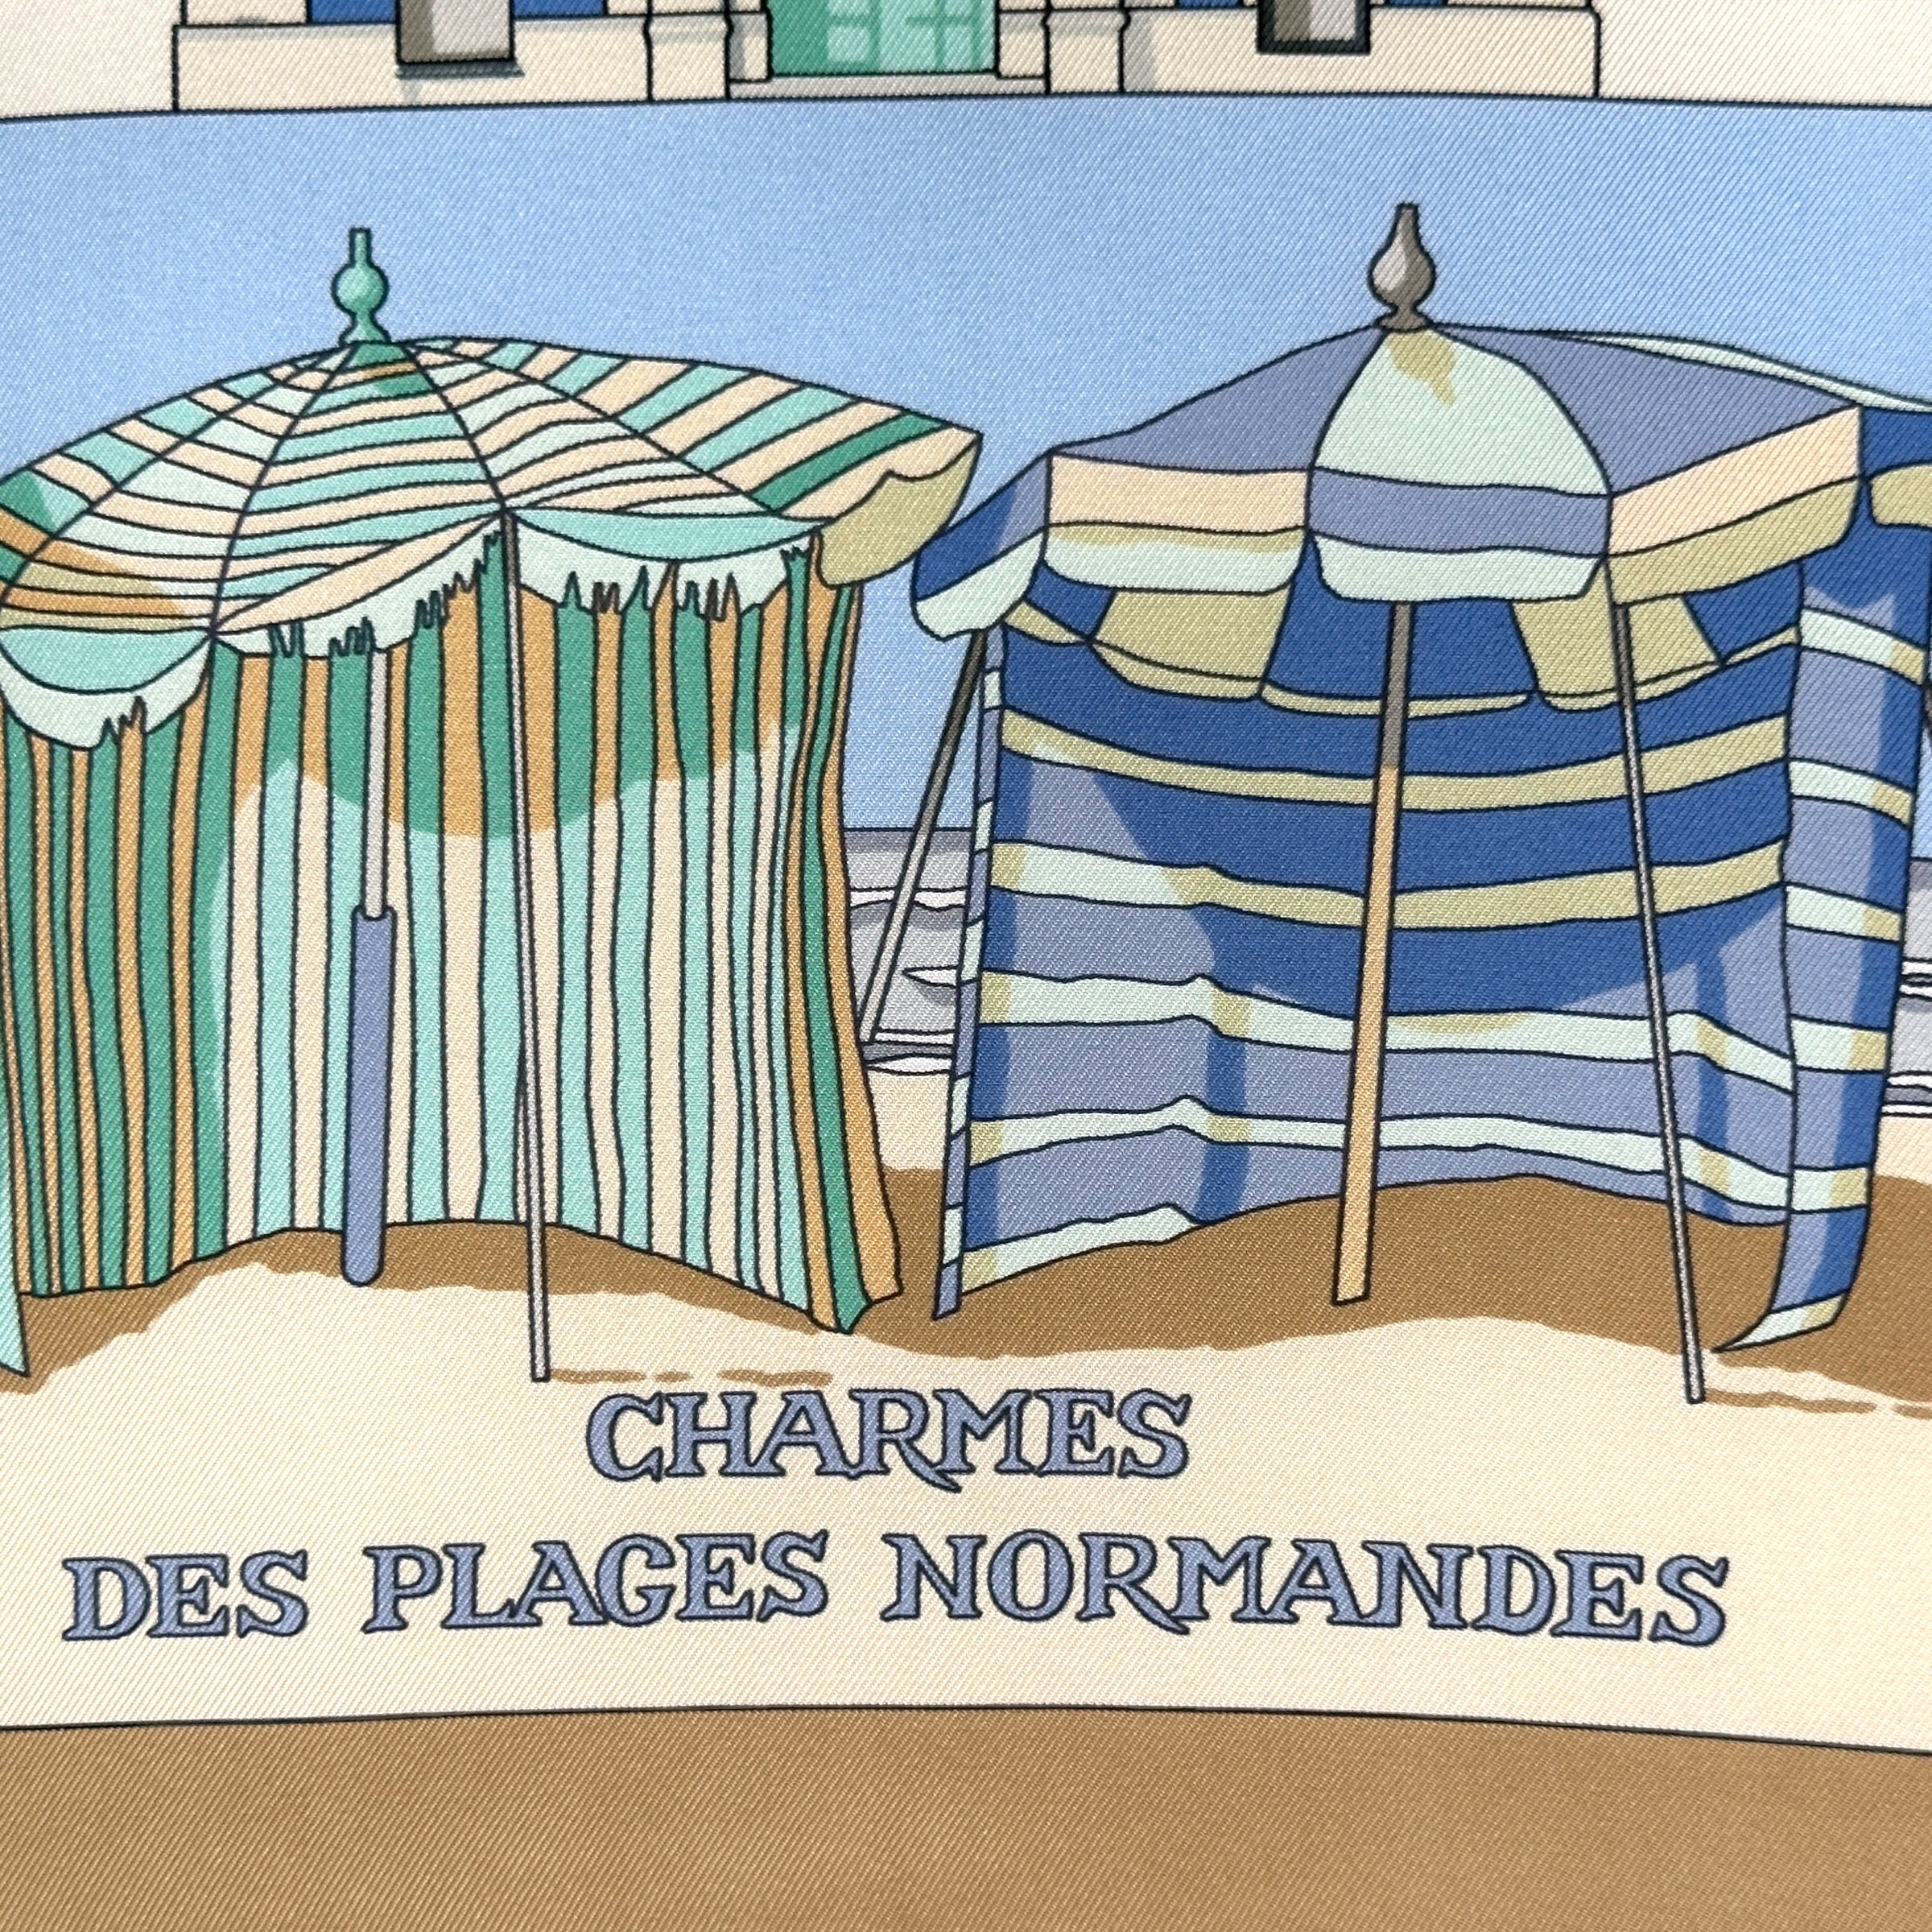 Charmes des plages normandes - FOULARD HERMES 90 CM